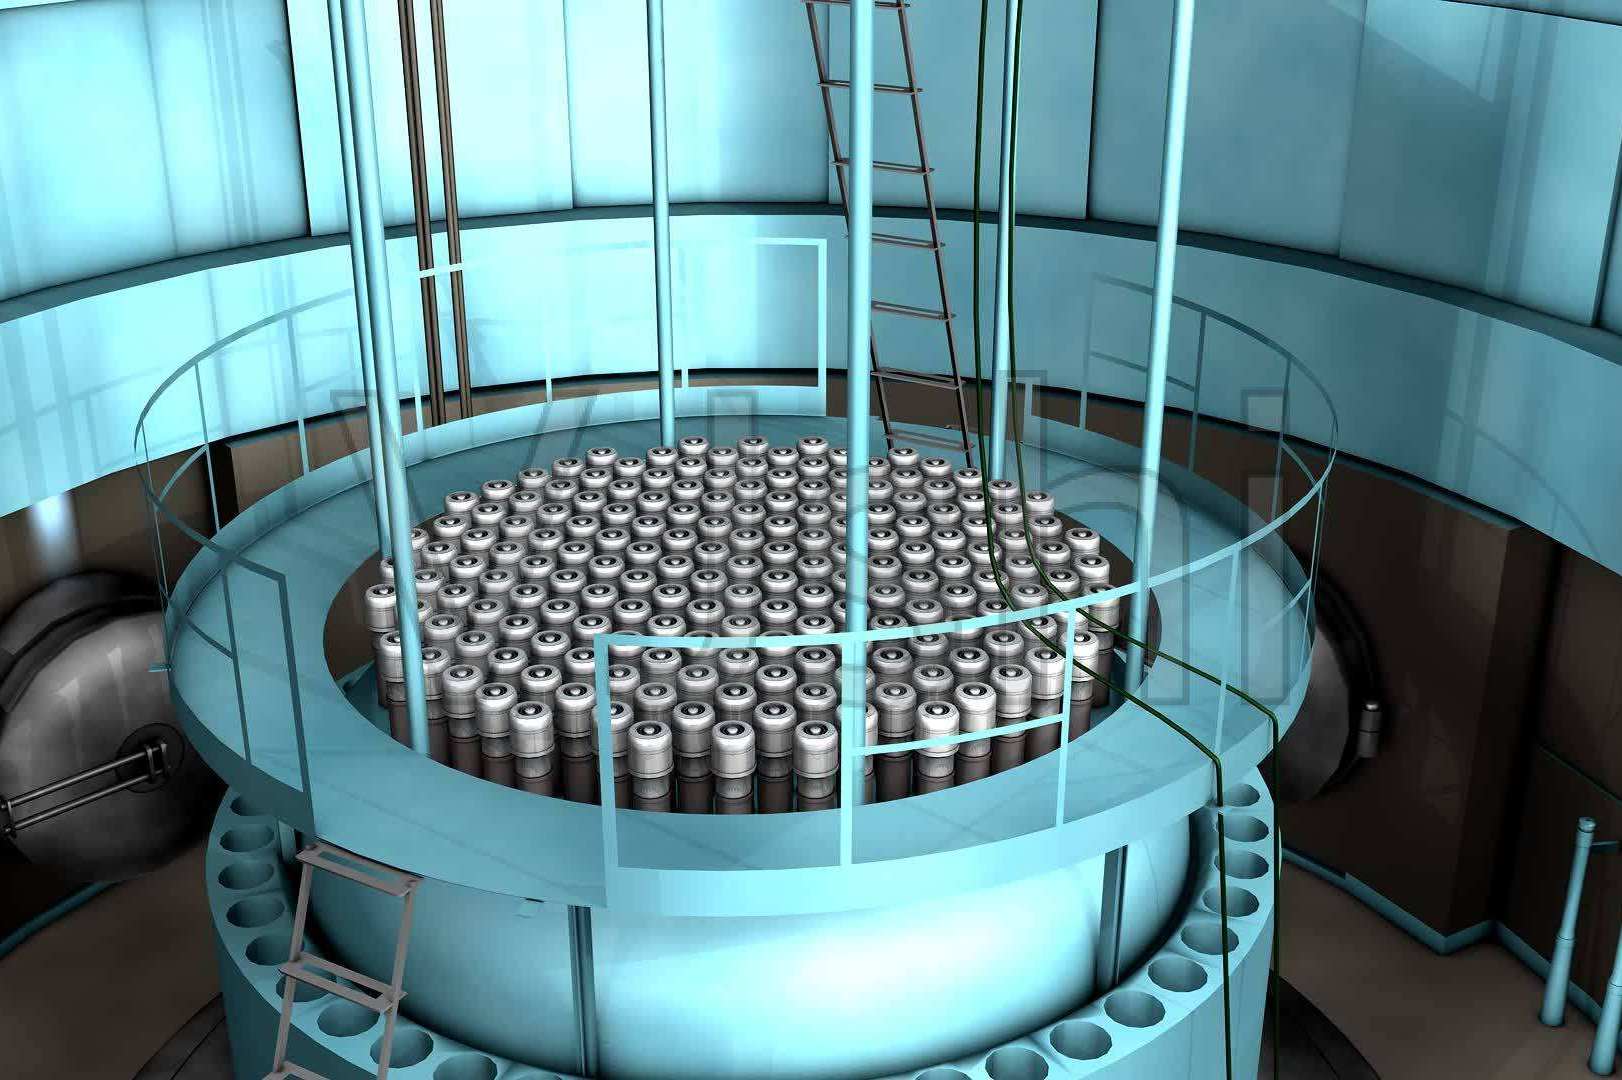 核反应堆在泳池内点火,科幻感瞬间溢出屏幕